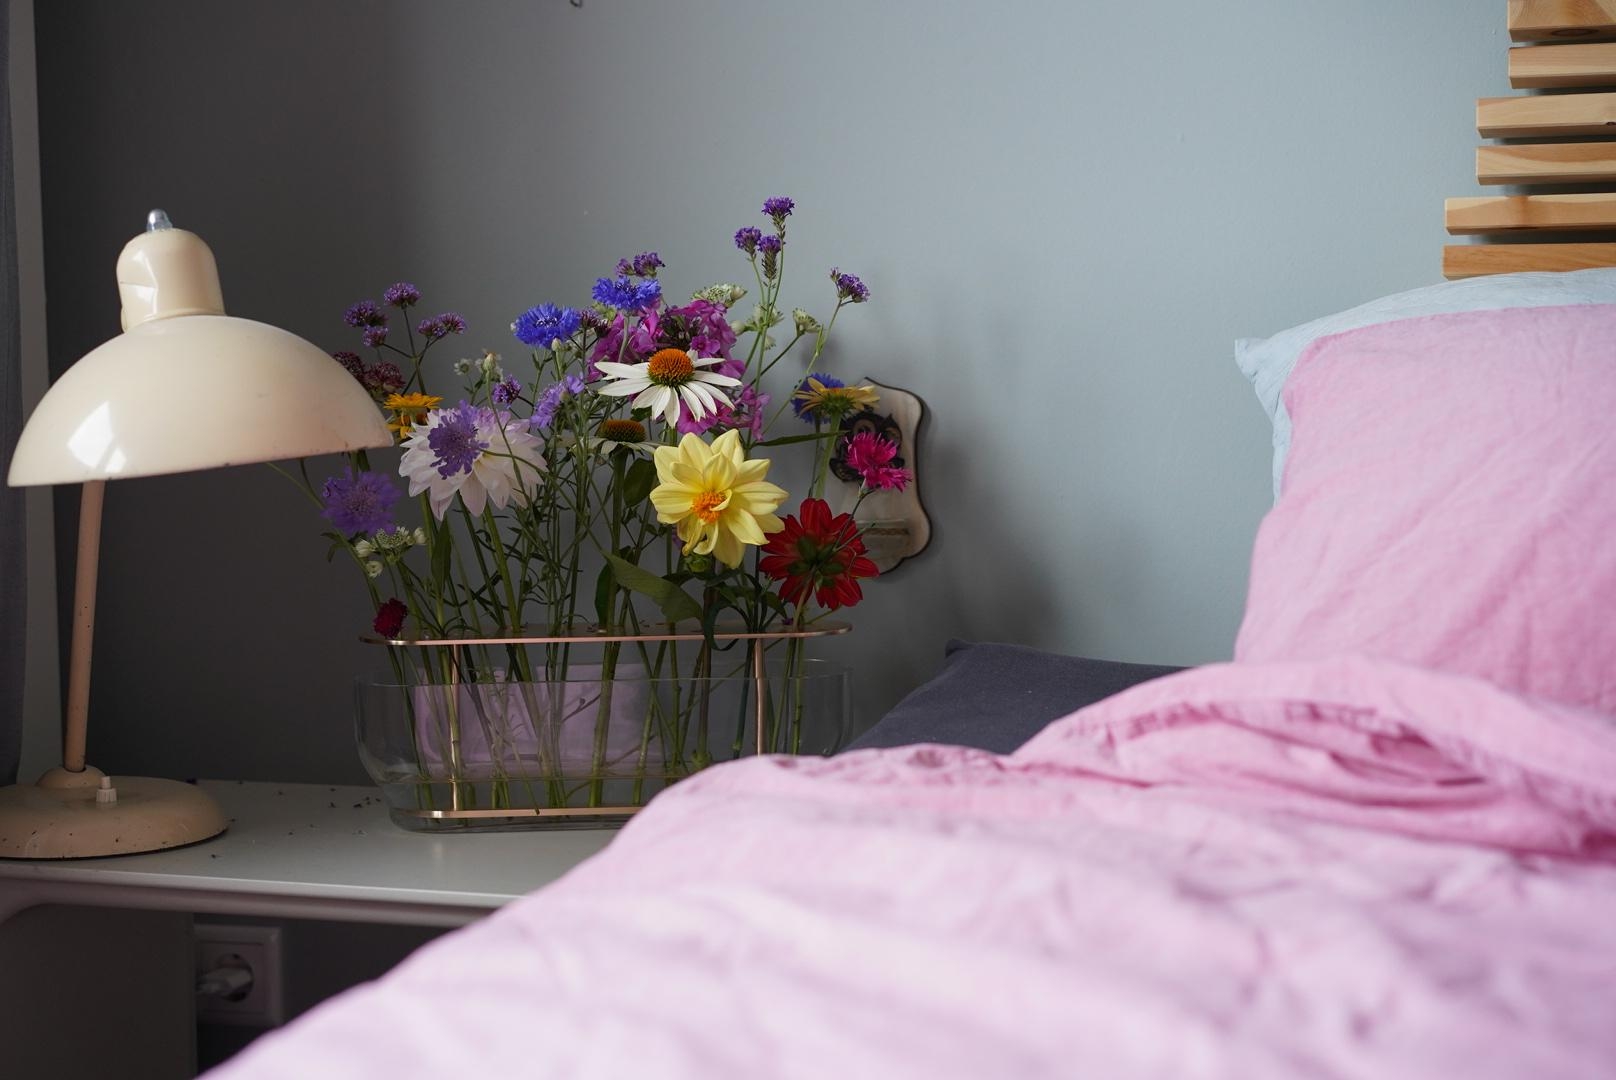 Blumen auf dem Nachttisch, wer noch? #livingchallenge #schlafzimmer #fritzhansen #ikebana